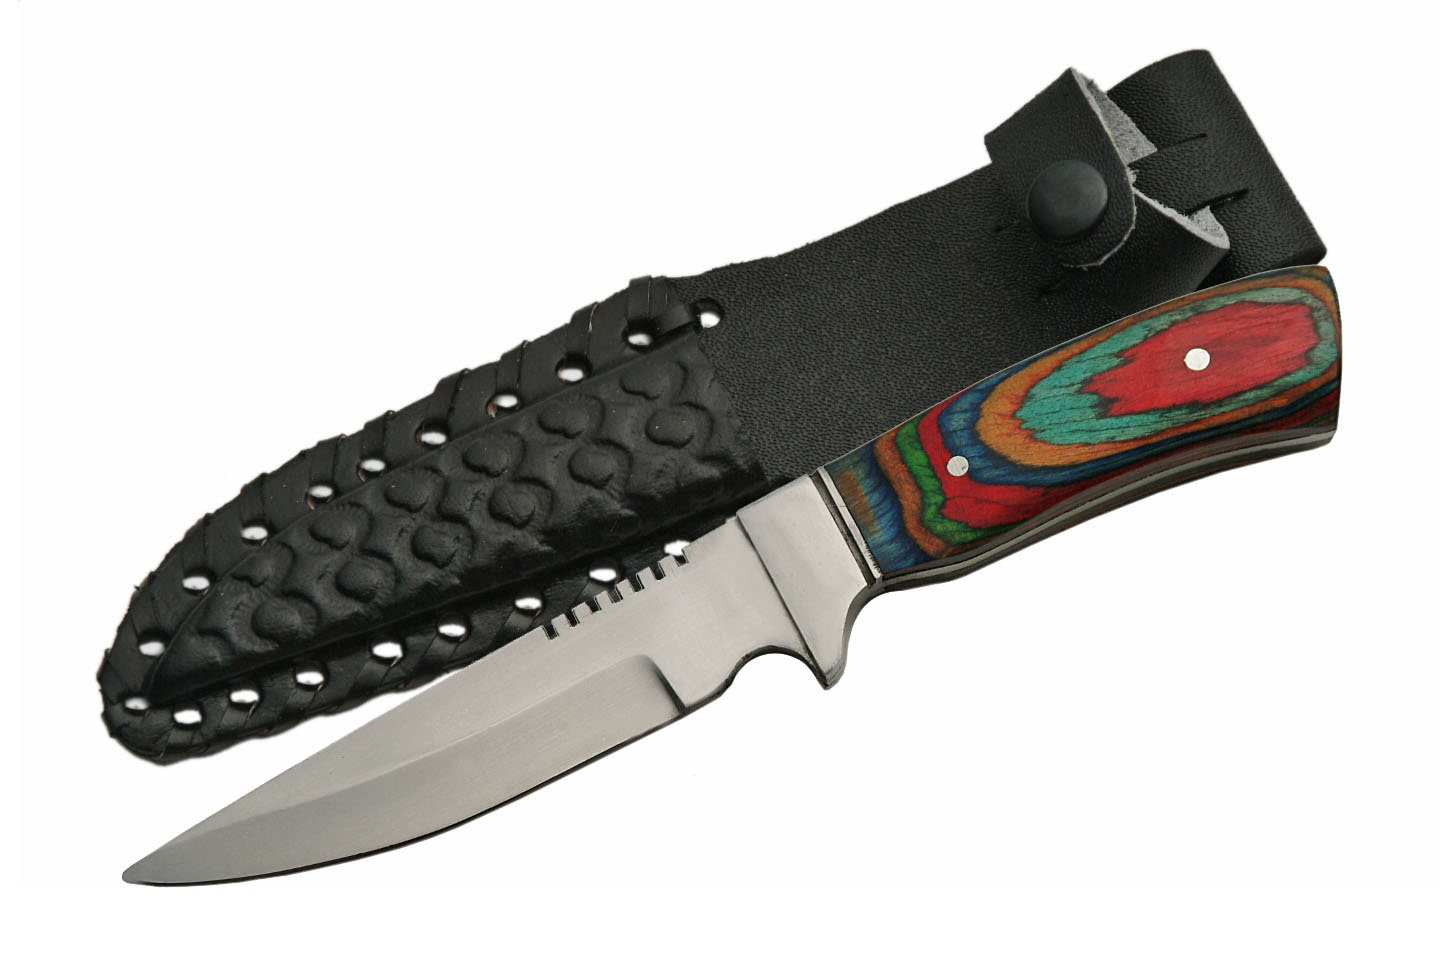 KNIFE - 203199 7'' Hunter